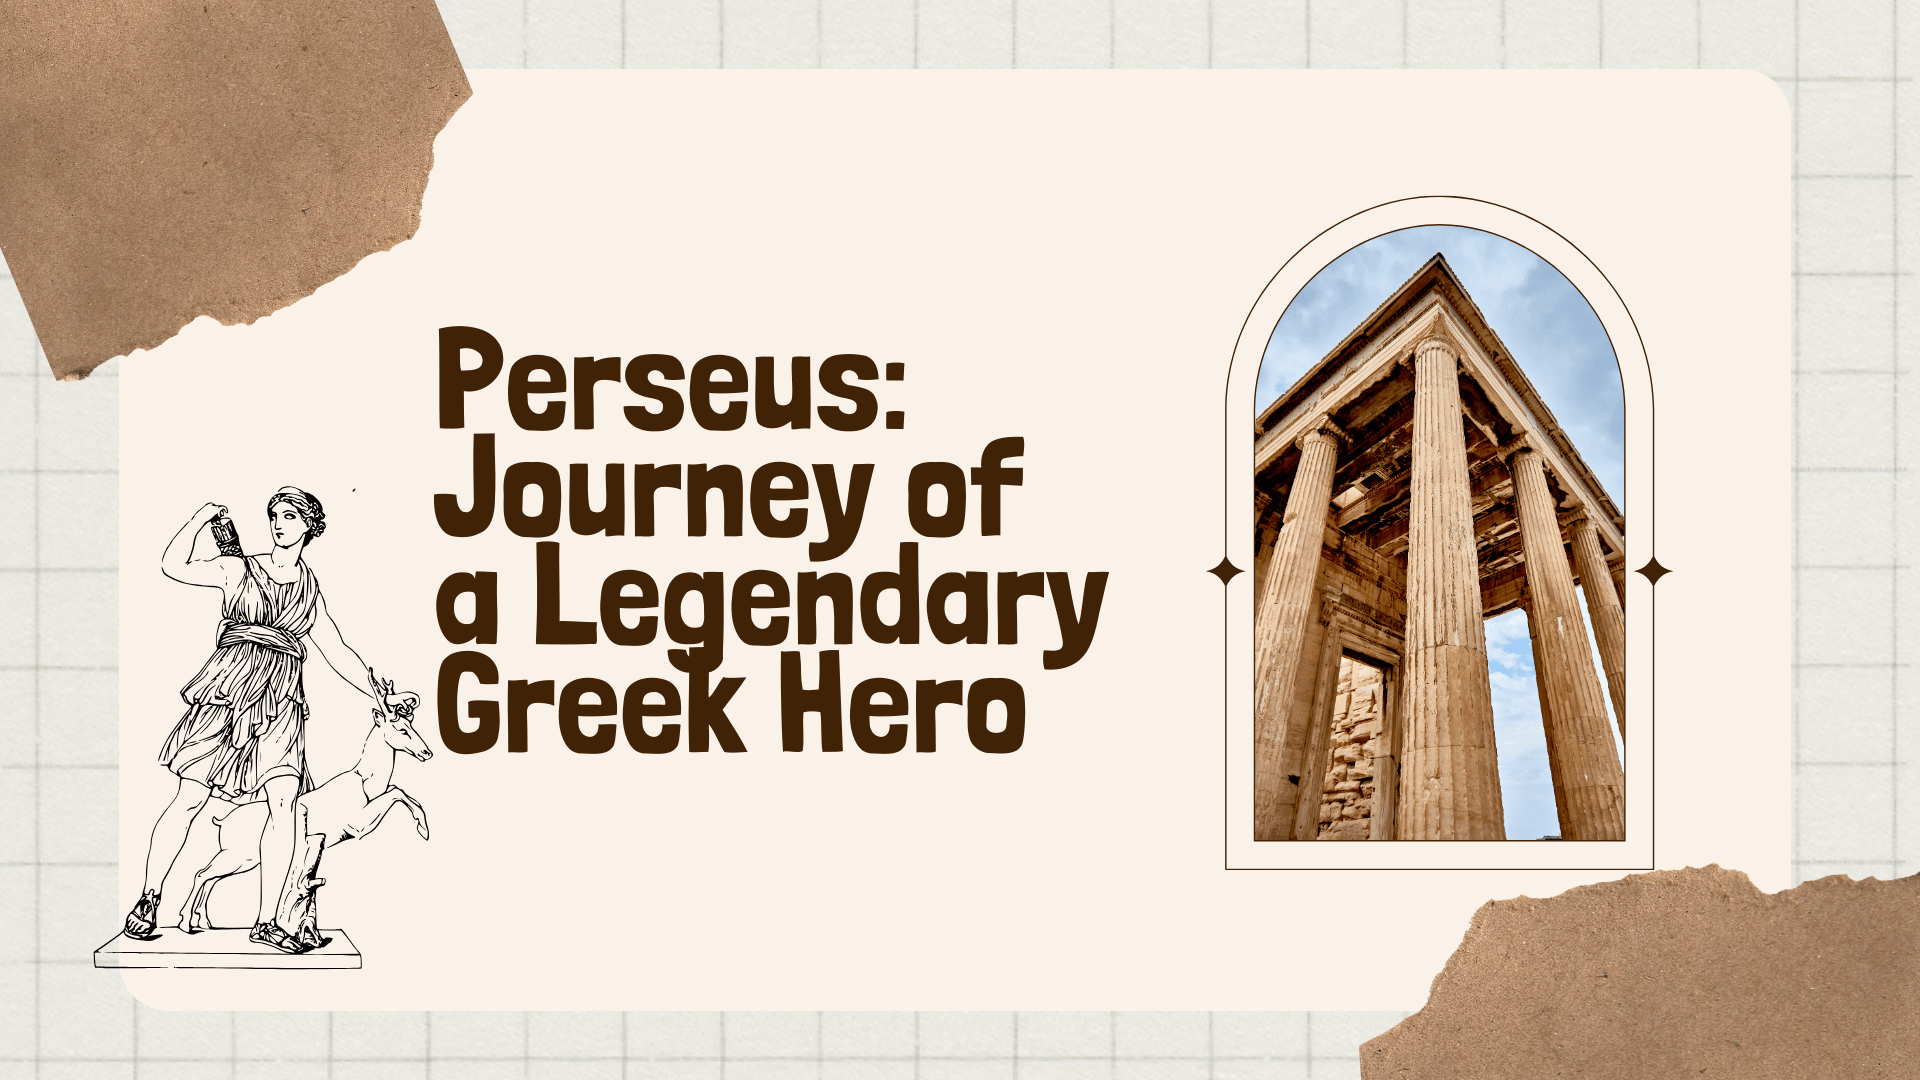 Perseus: Journey of a Legendary Greek Hero